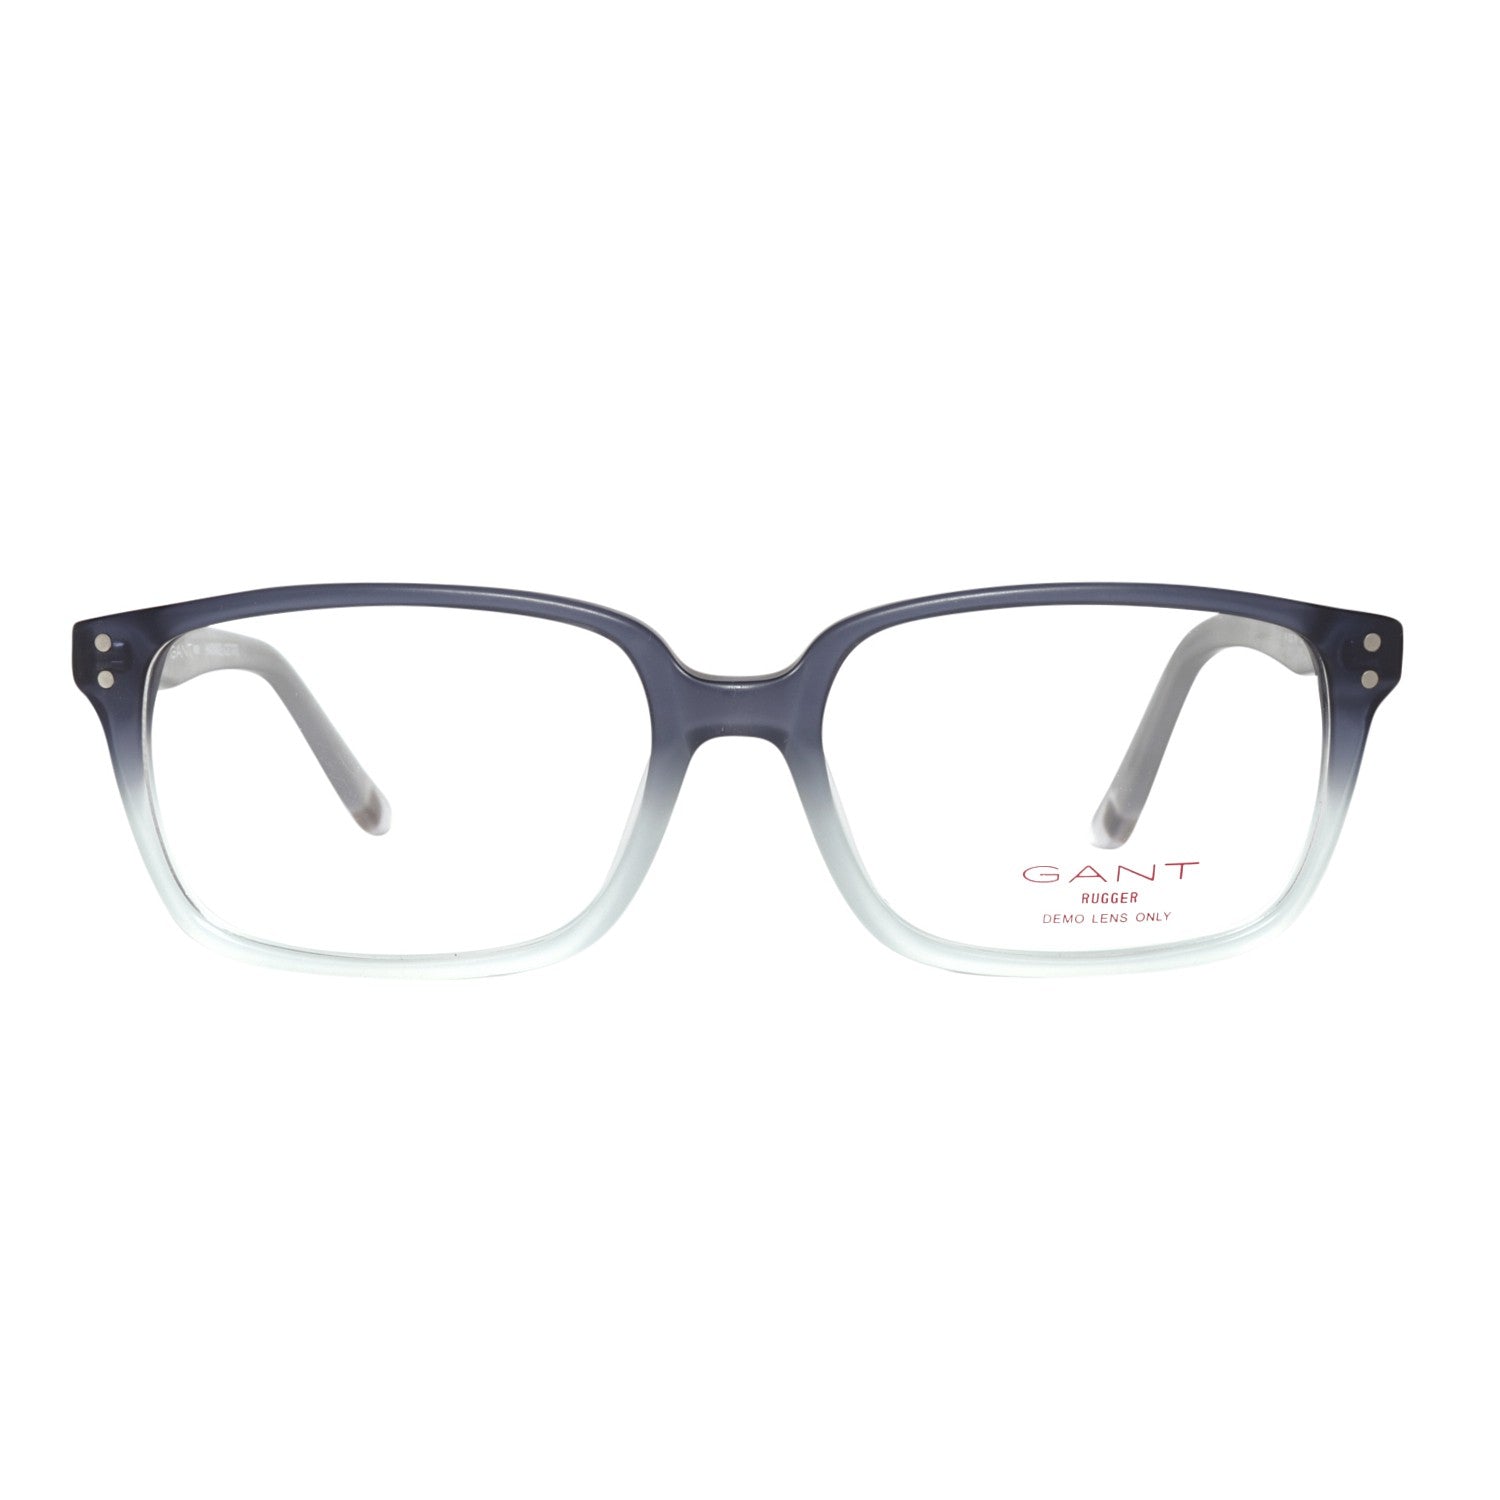 Gant Frames Gant Glasses Frames GRA105 L77 53 | GR 5009 MNV 53 Eyeglasses Eyewear UK USA Australia 